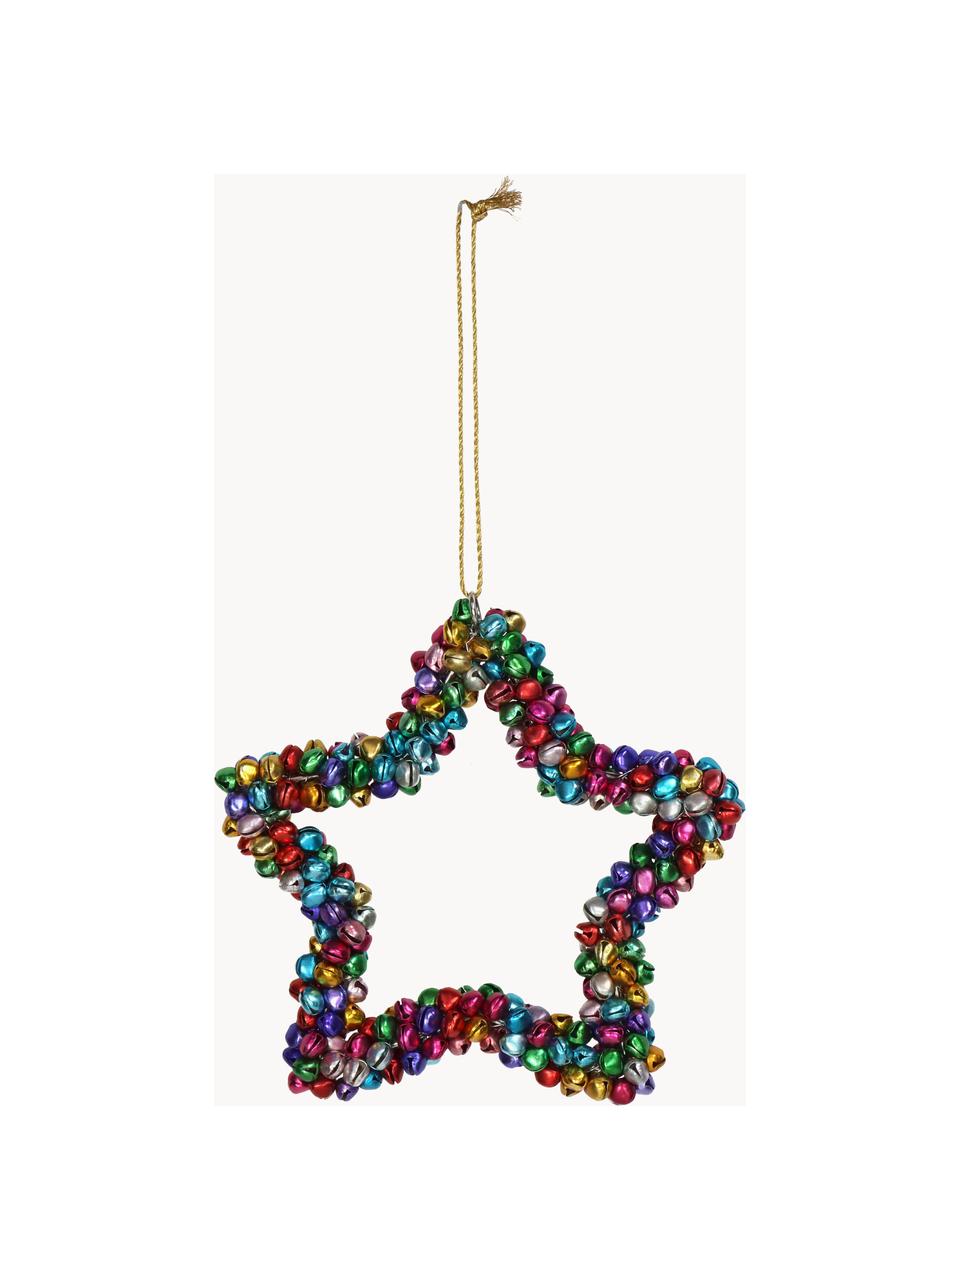 Baumanhänger Star mit Glöckchen, Metall, beschichtet, Bunt, B 14 x H 14 cm